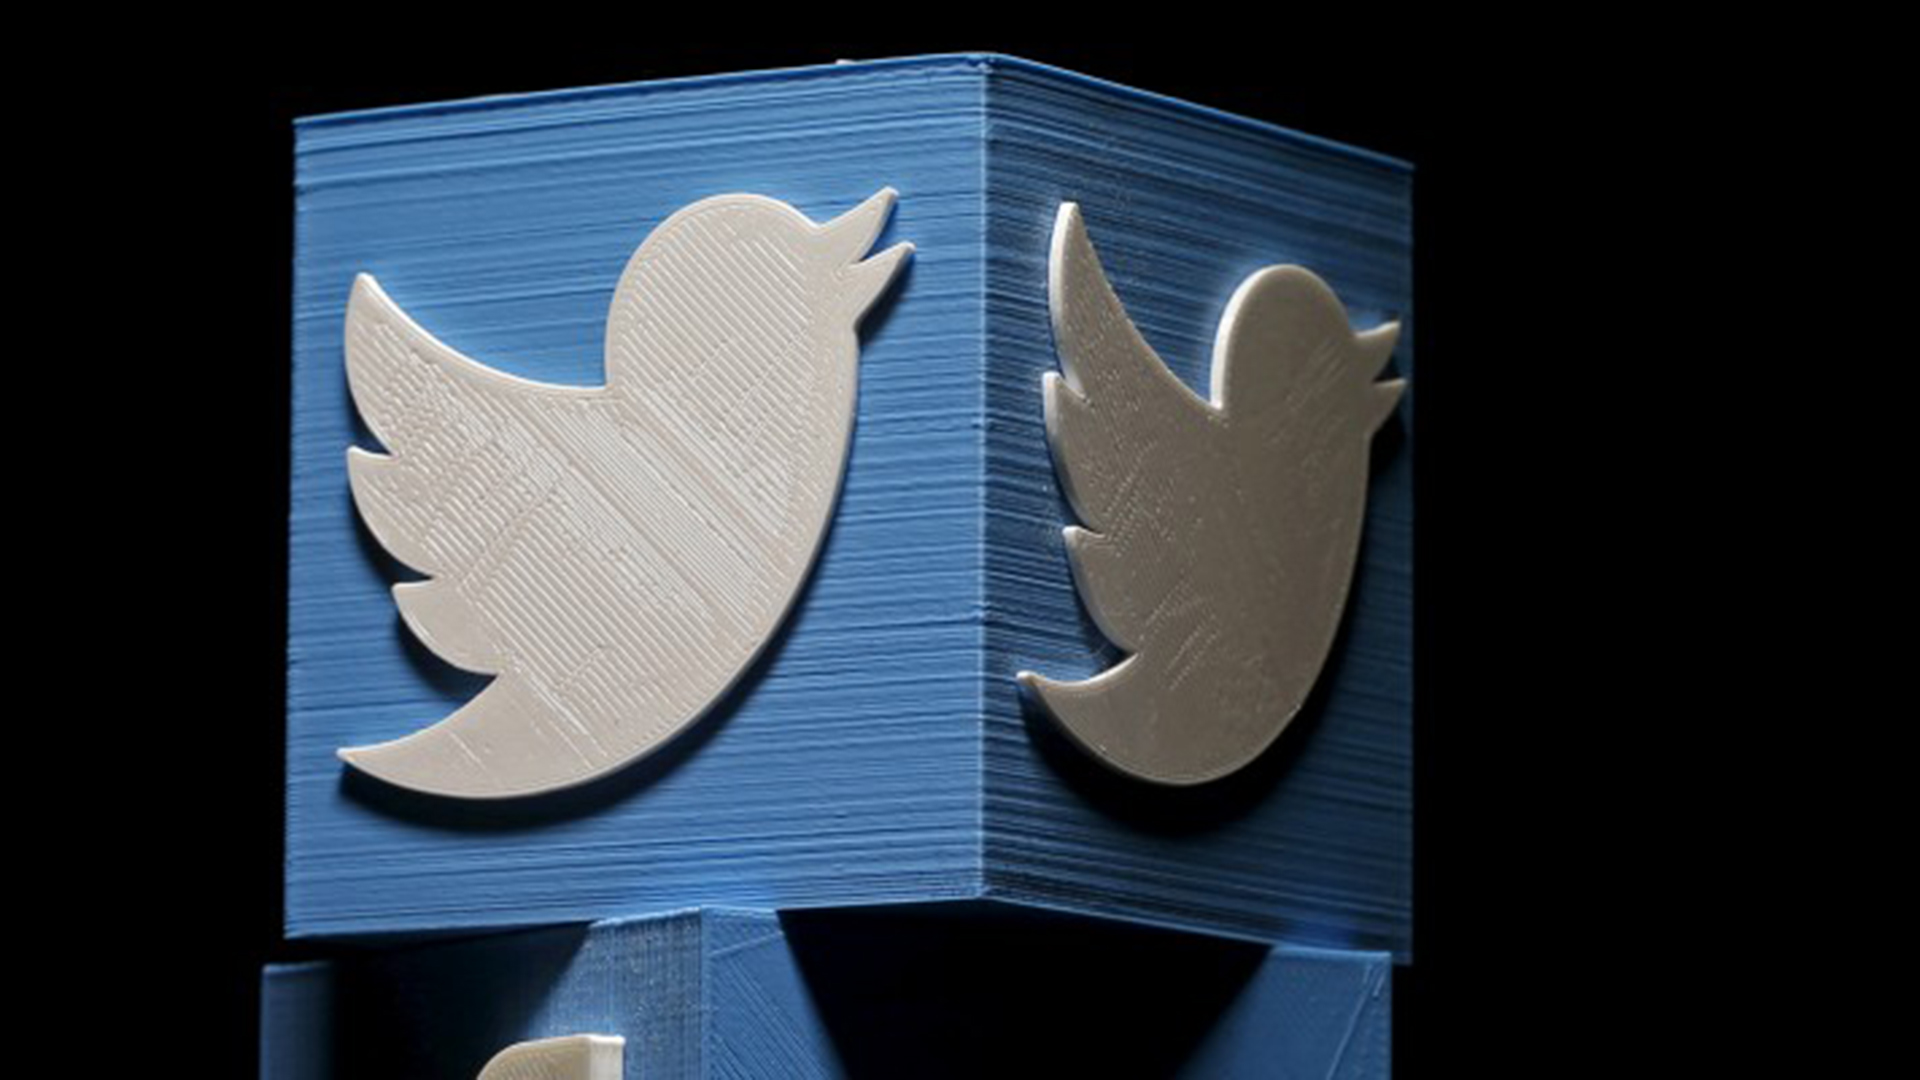 Twitter estaba “poco preparado y mal equipado” para las inmensas campañas de manipulación que afectaron a las redes sociales en los últimos años, reconoció su presidente ejecutivo, Jack Dorsey